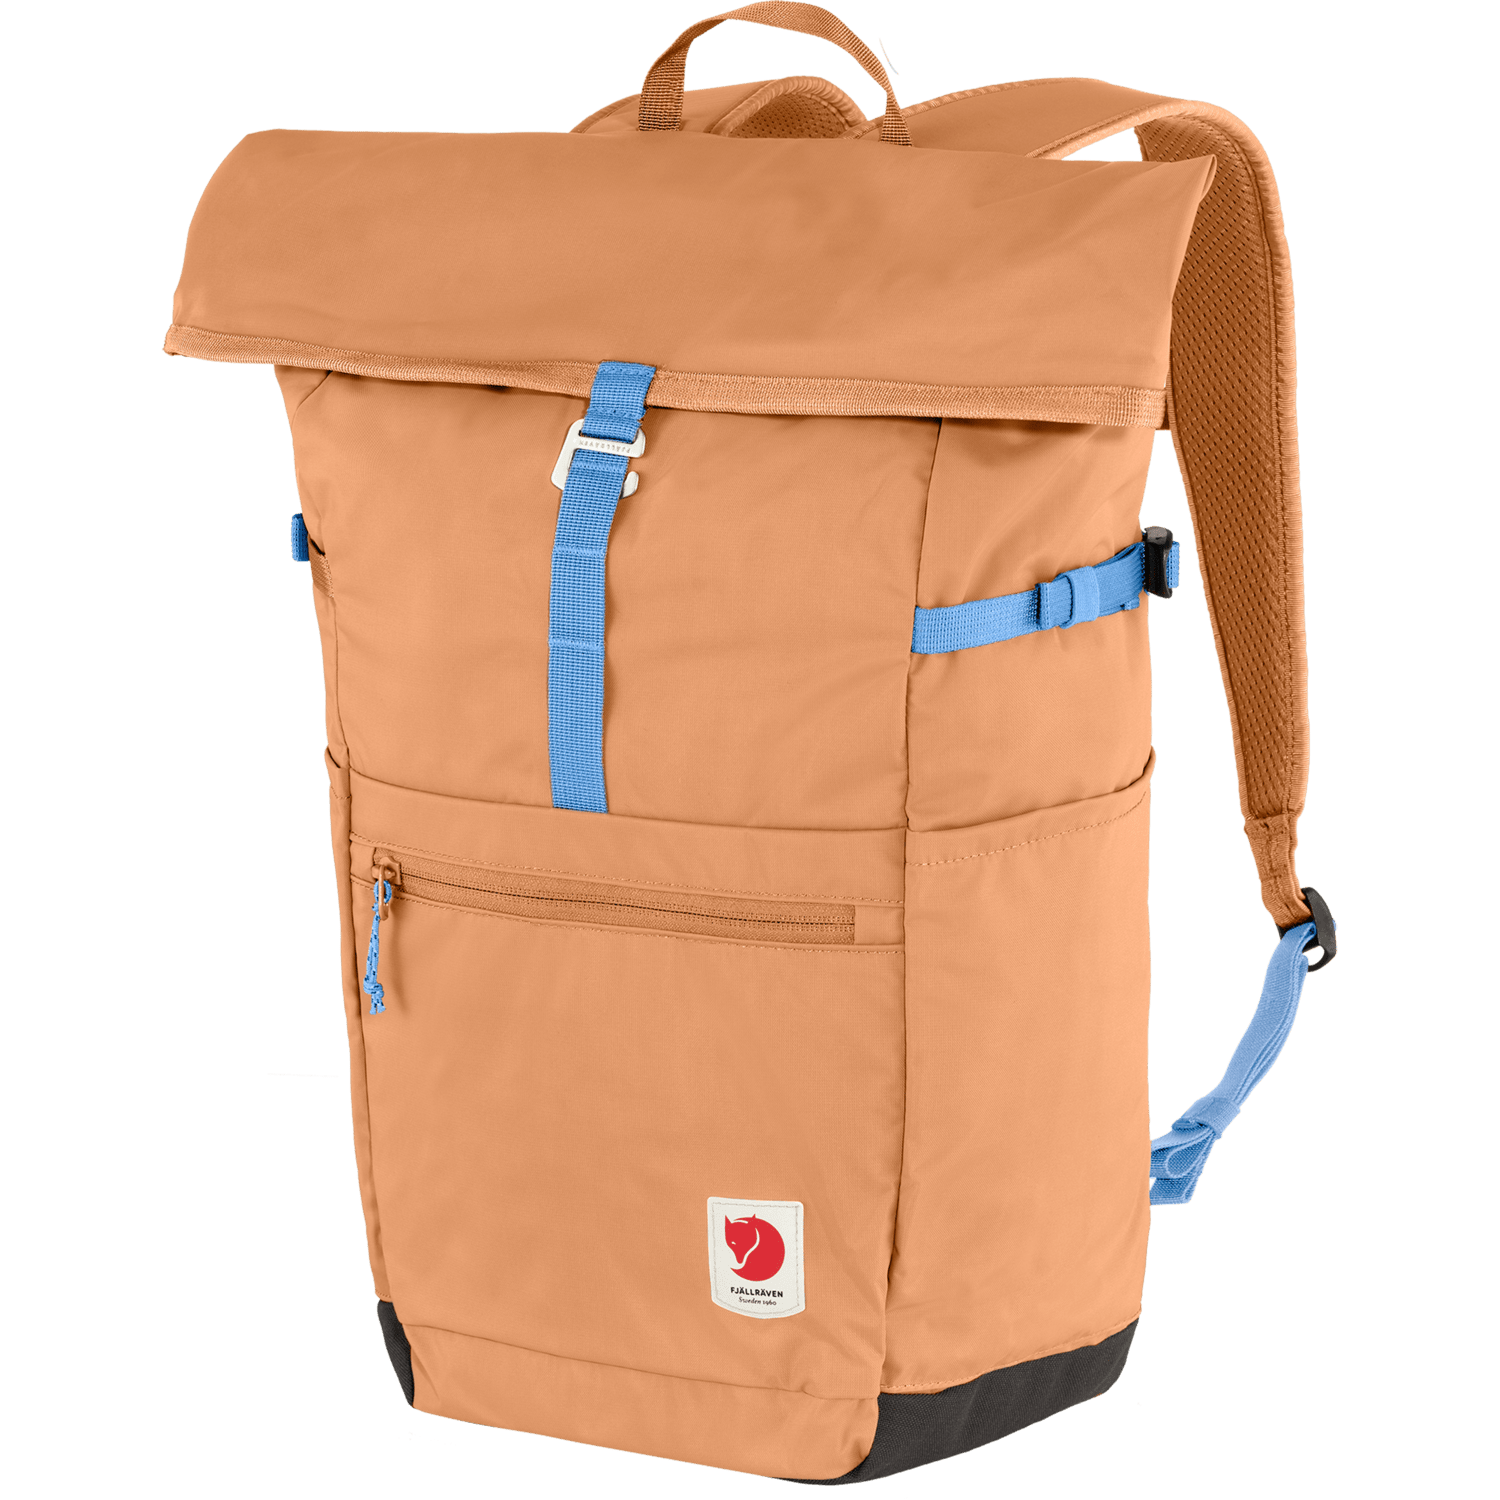 Fjällräven High Coast Foldsack 24l - Recycled nylon Peach Sand Bags